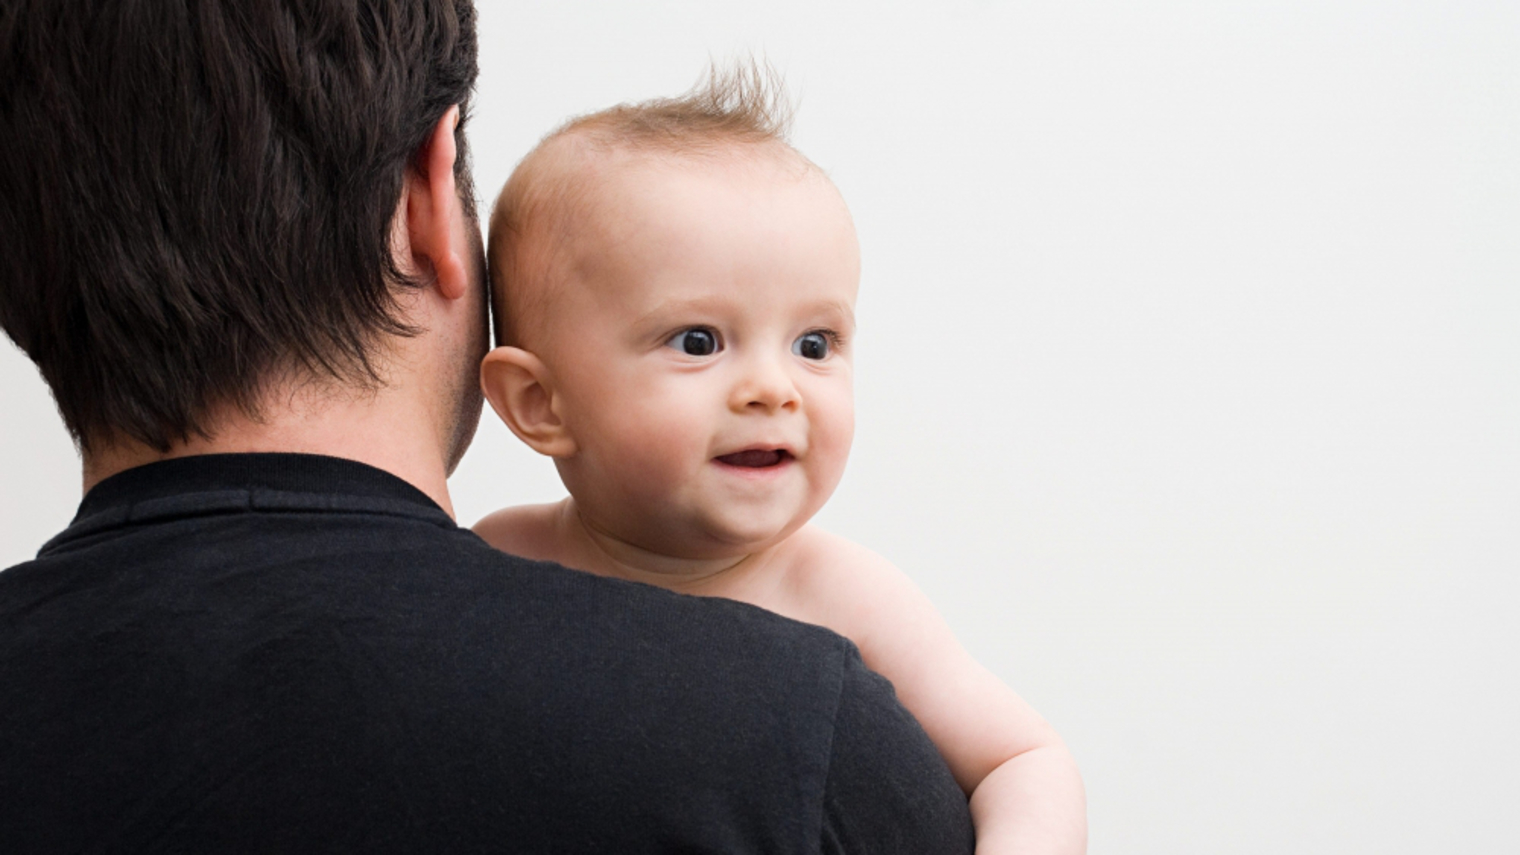 Le congé de paternité : un droit exercé par sept pères sur dix